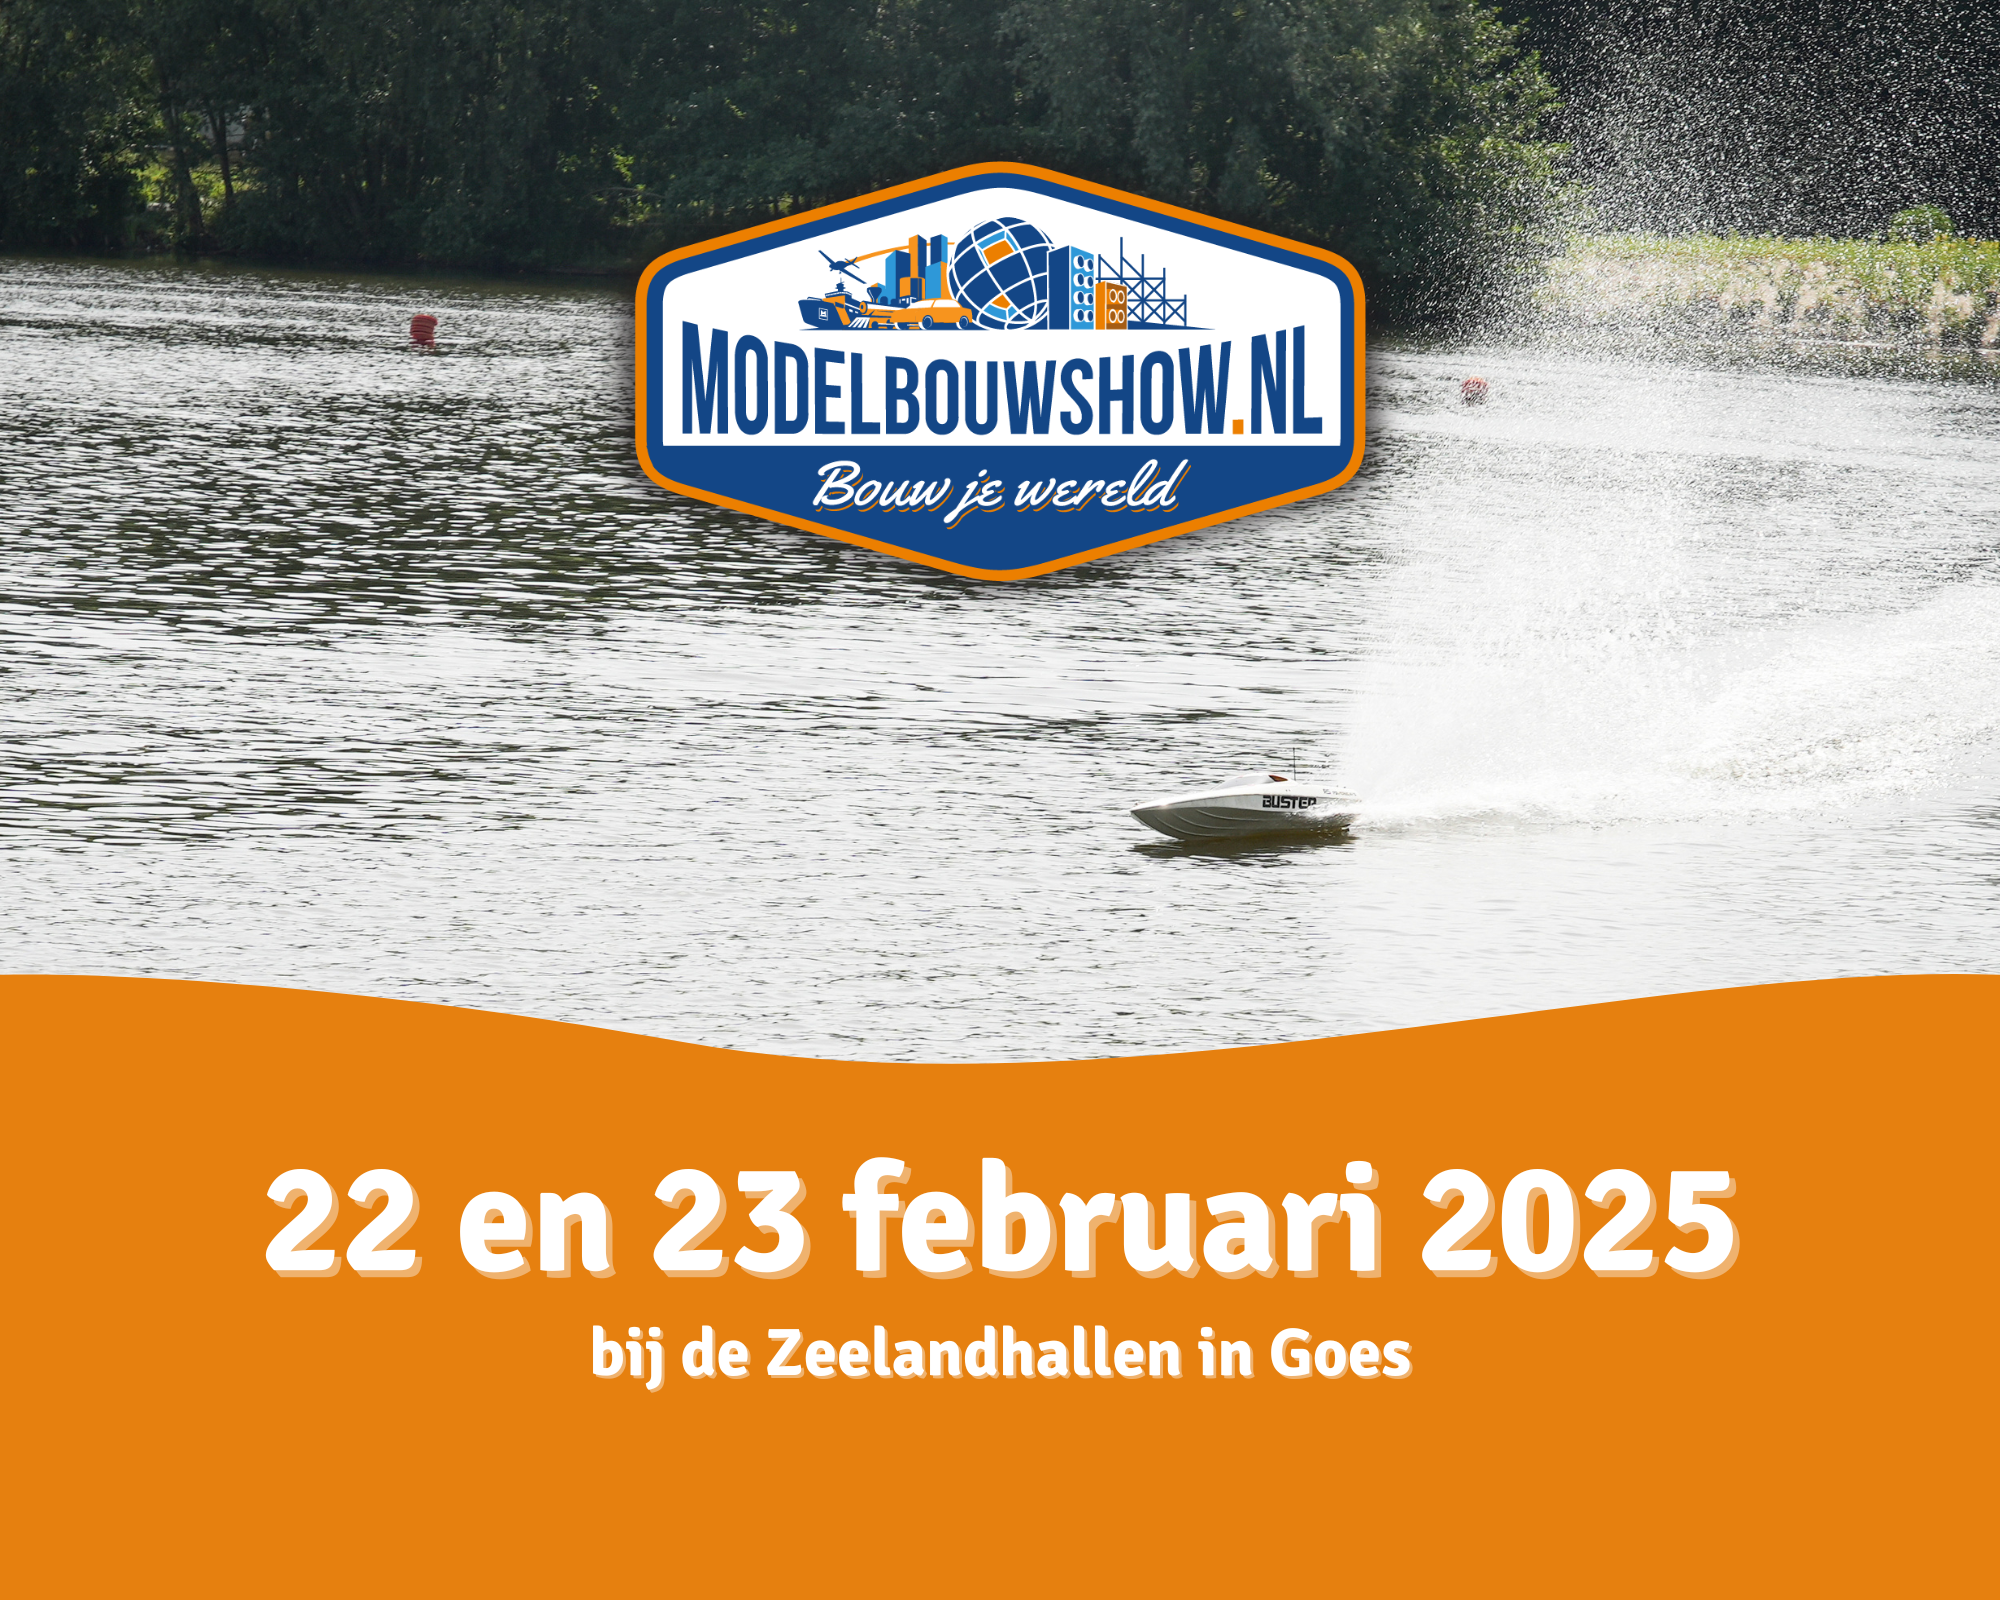 Modelbouwshow,nl Goes 2025